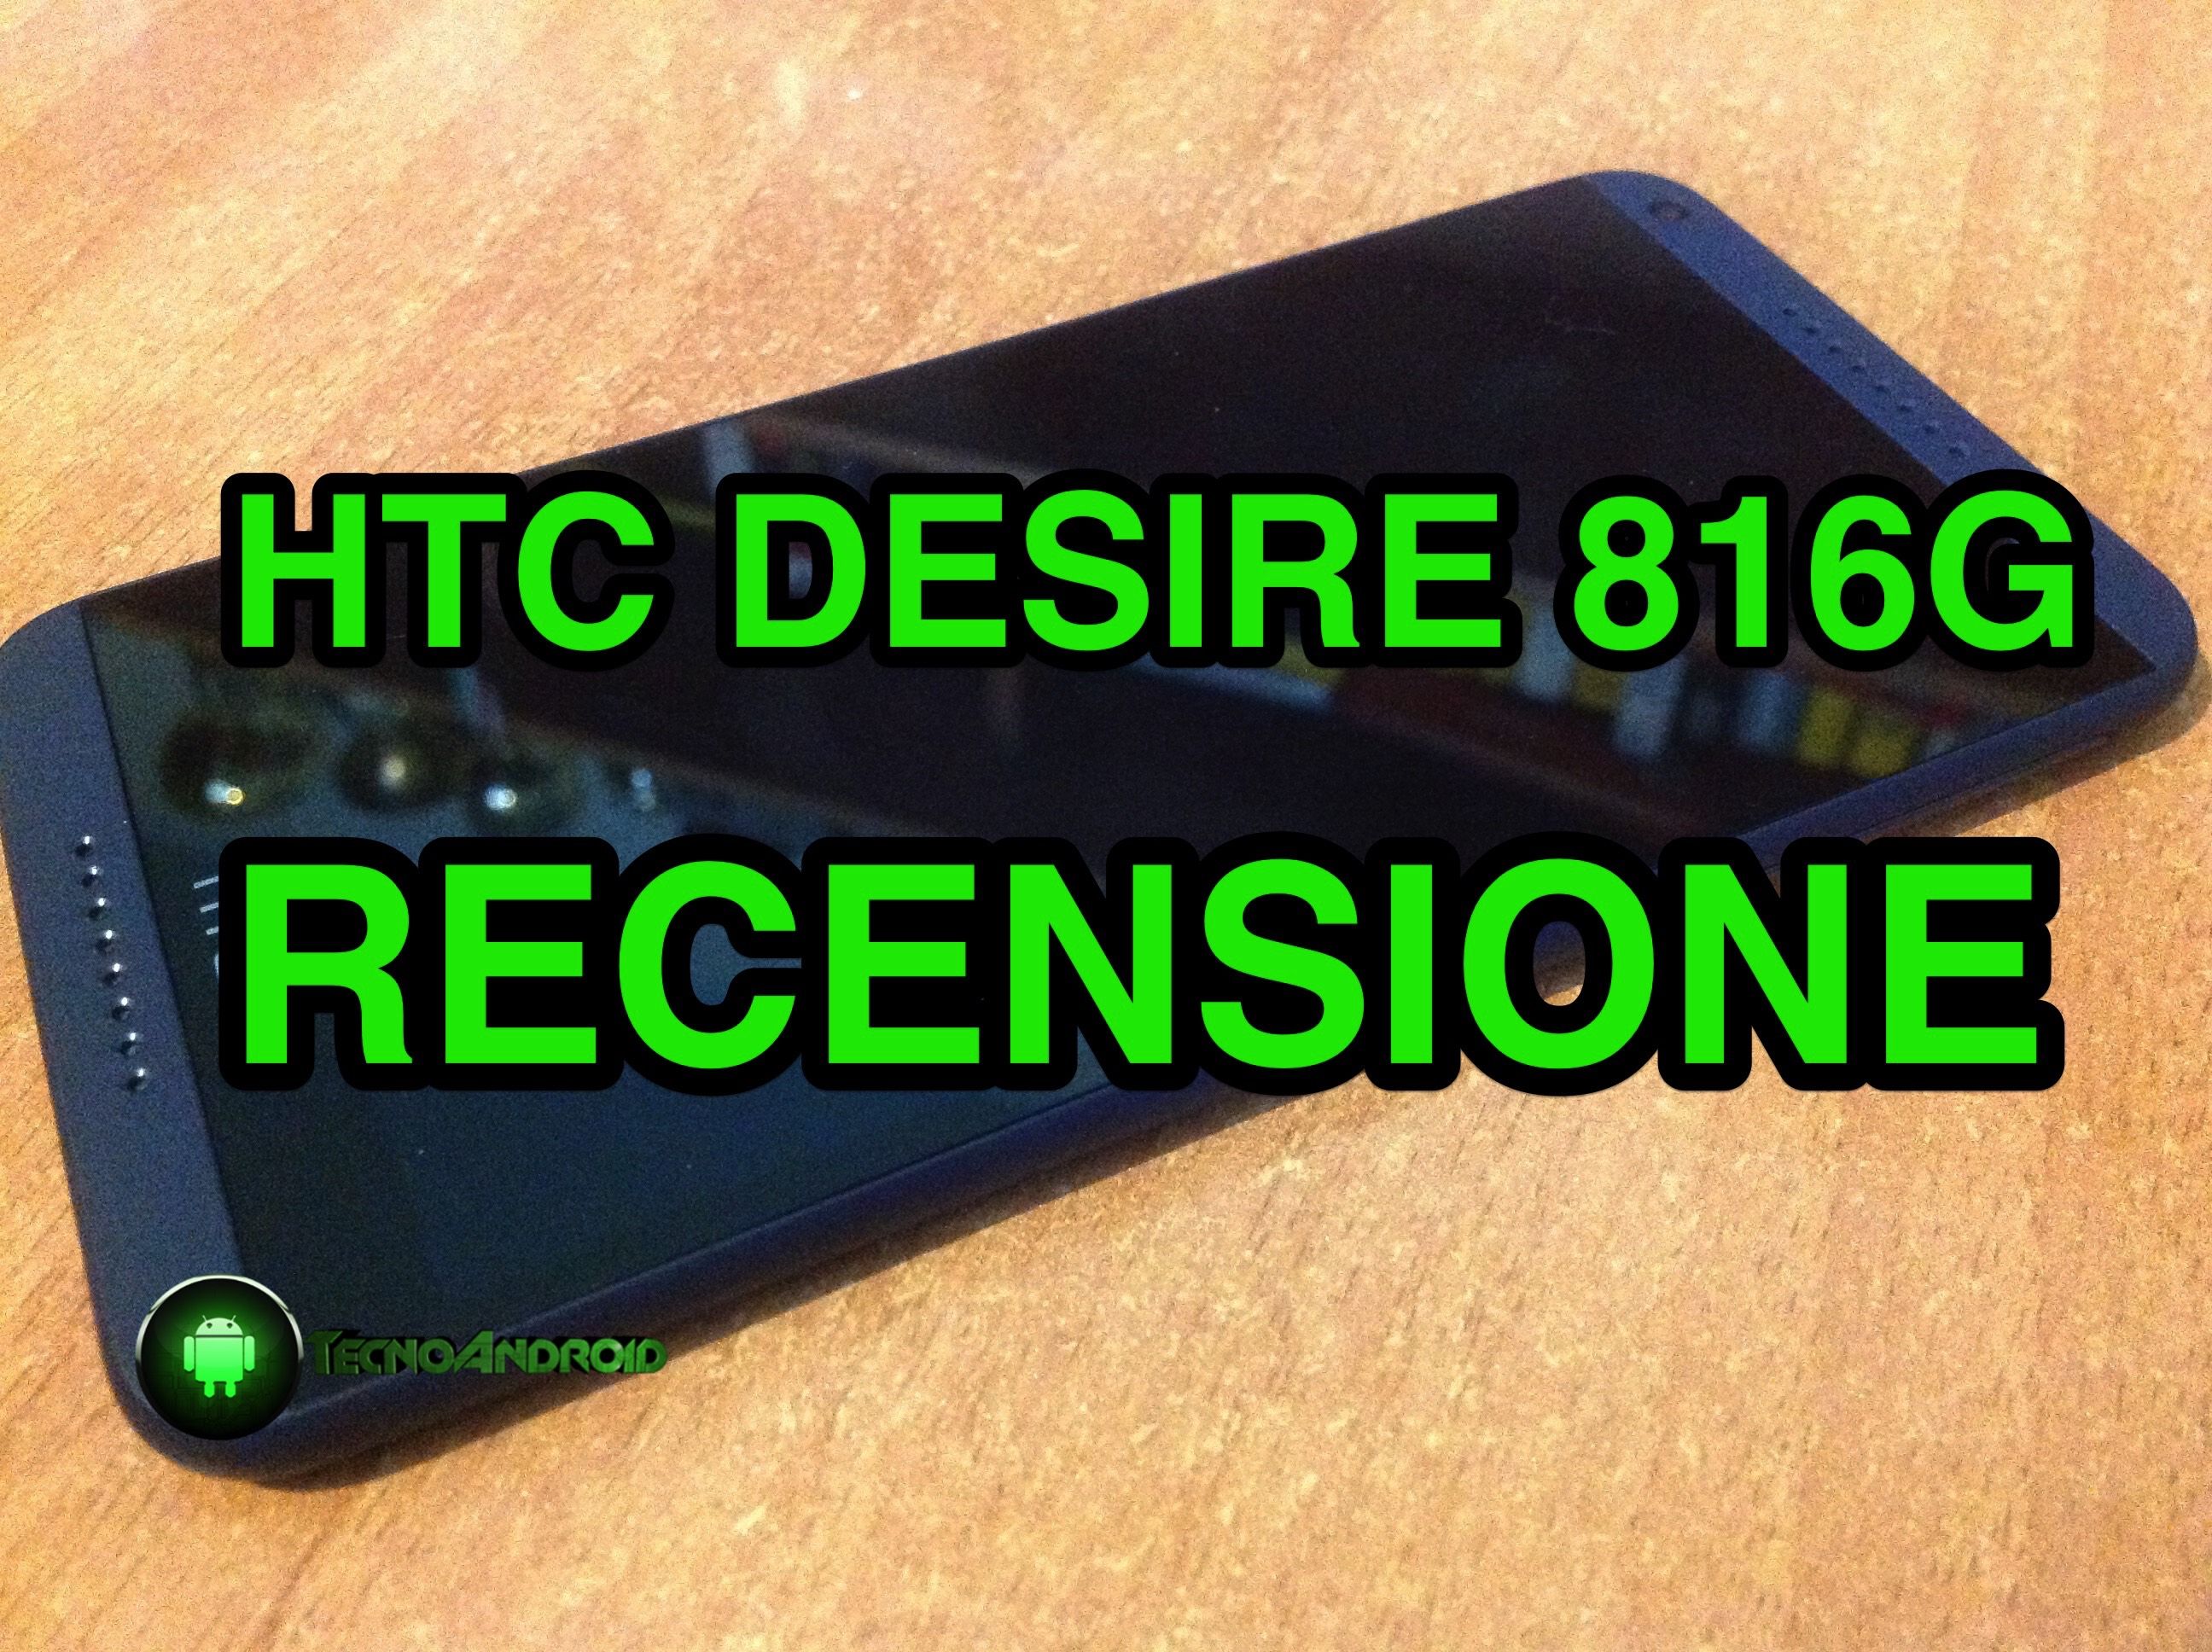 htc desire 816g